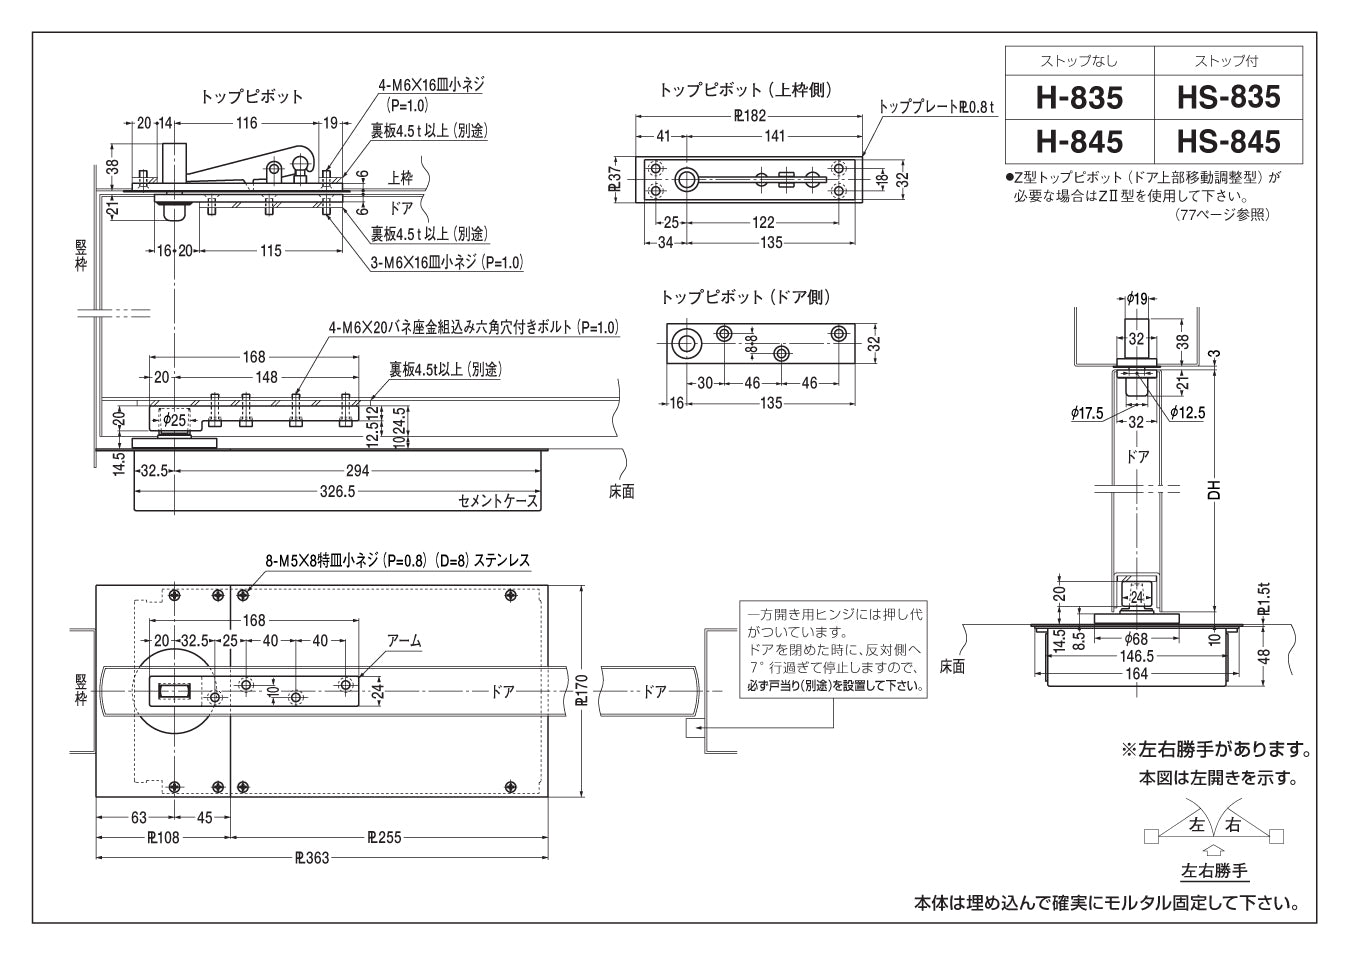 日本に ニュースター フロアヒンジ 中心吊り S-835 CHB CS-1350の取替本体